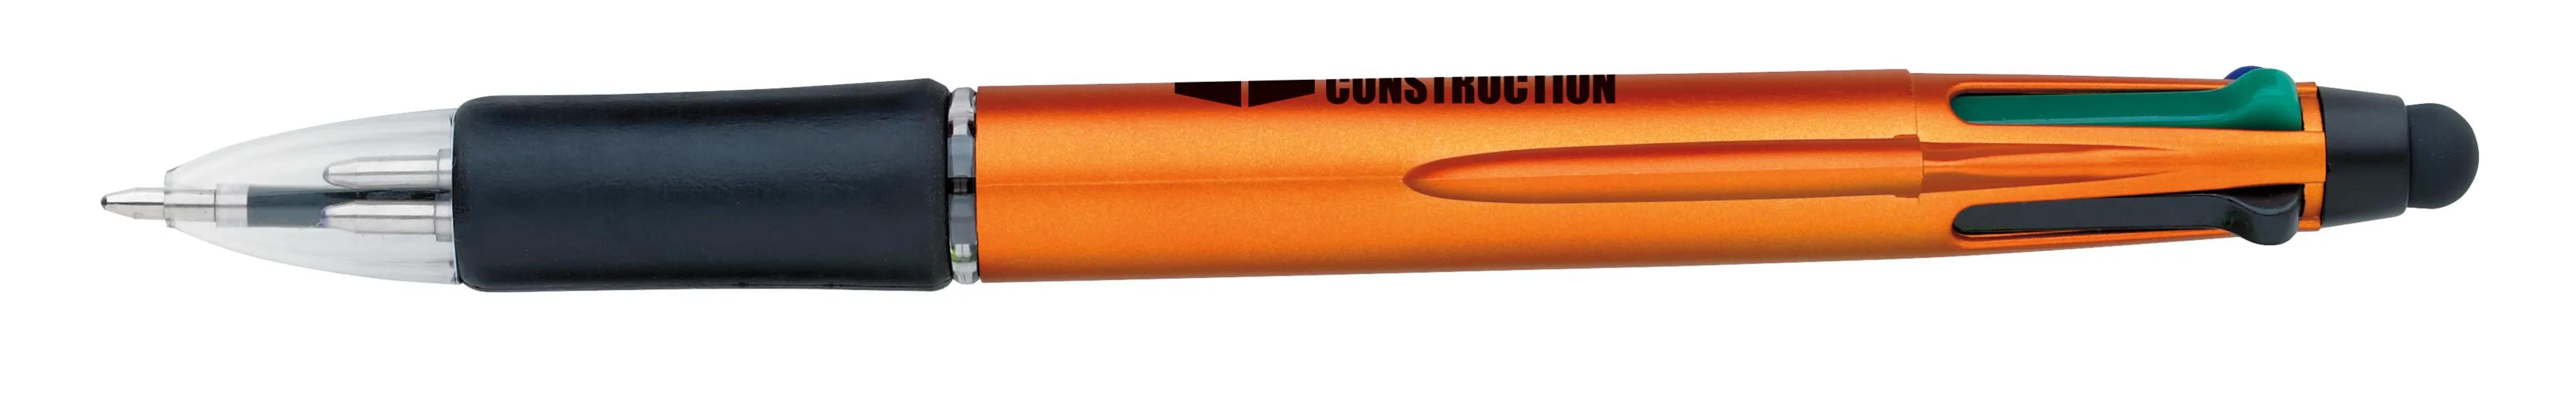 Orbitor Metallic Stylus Pen 48 of 56